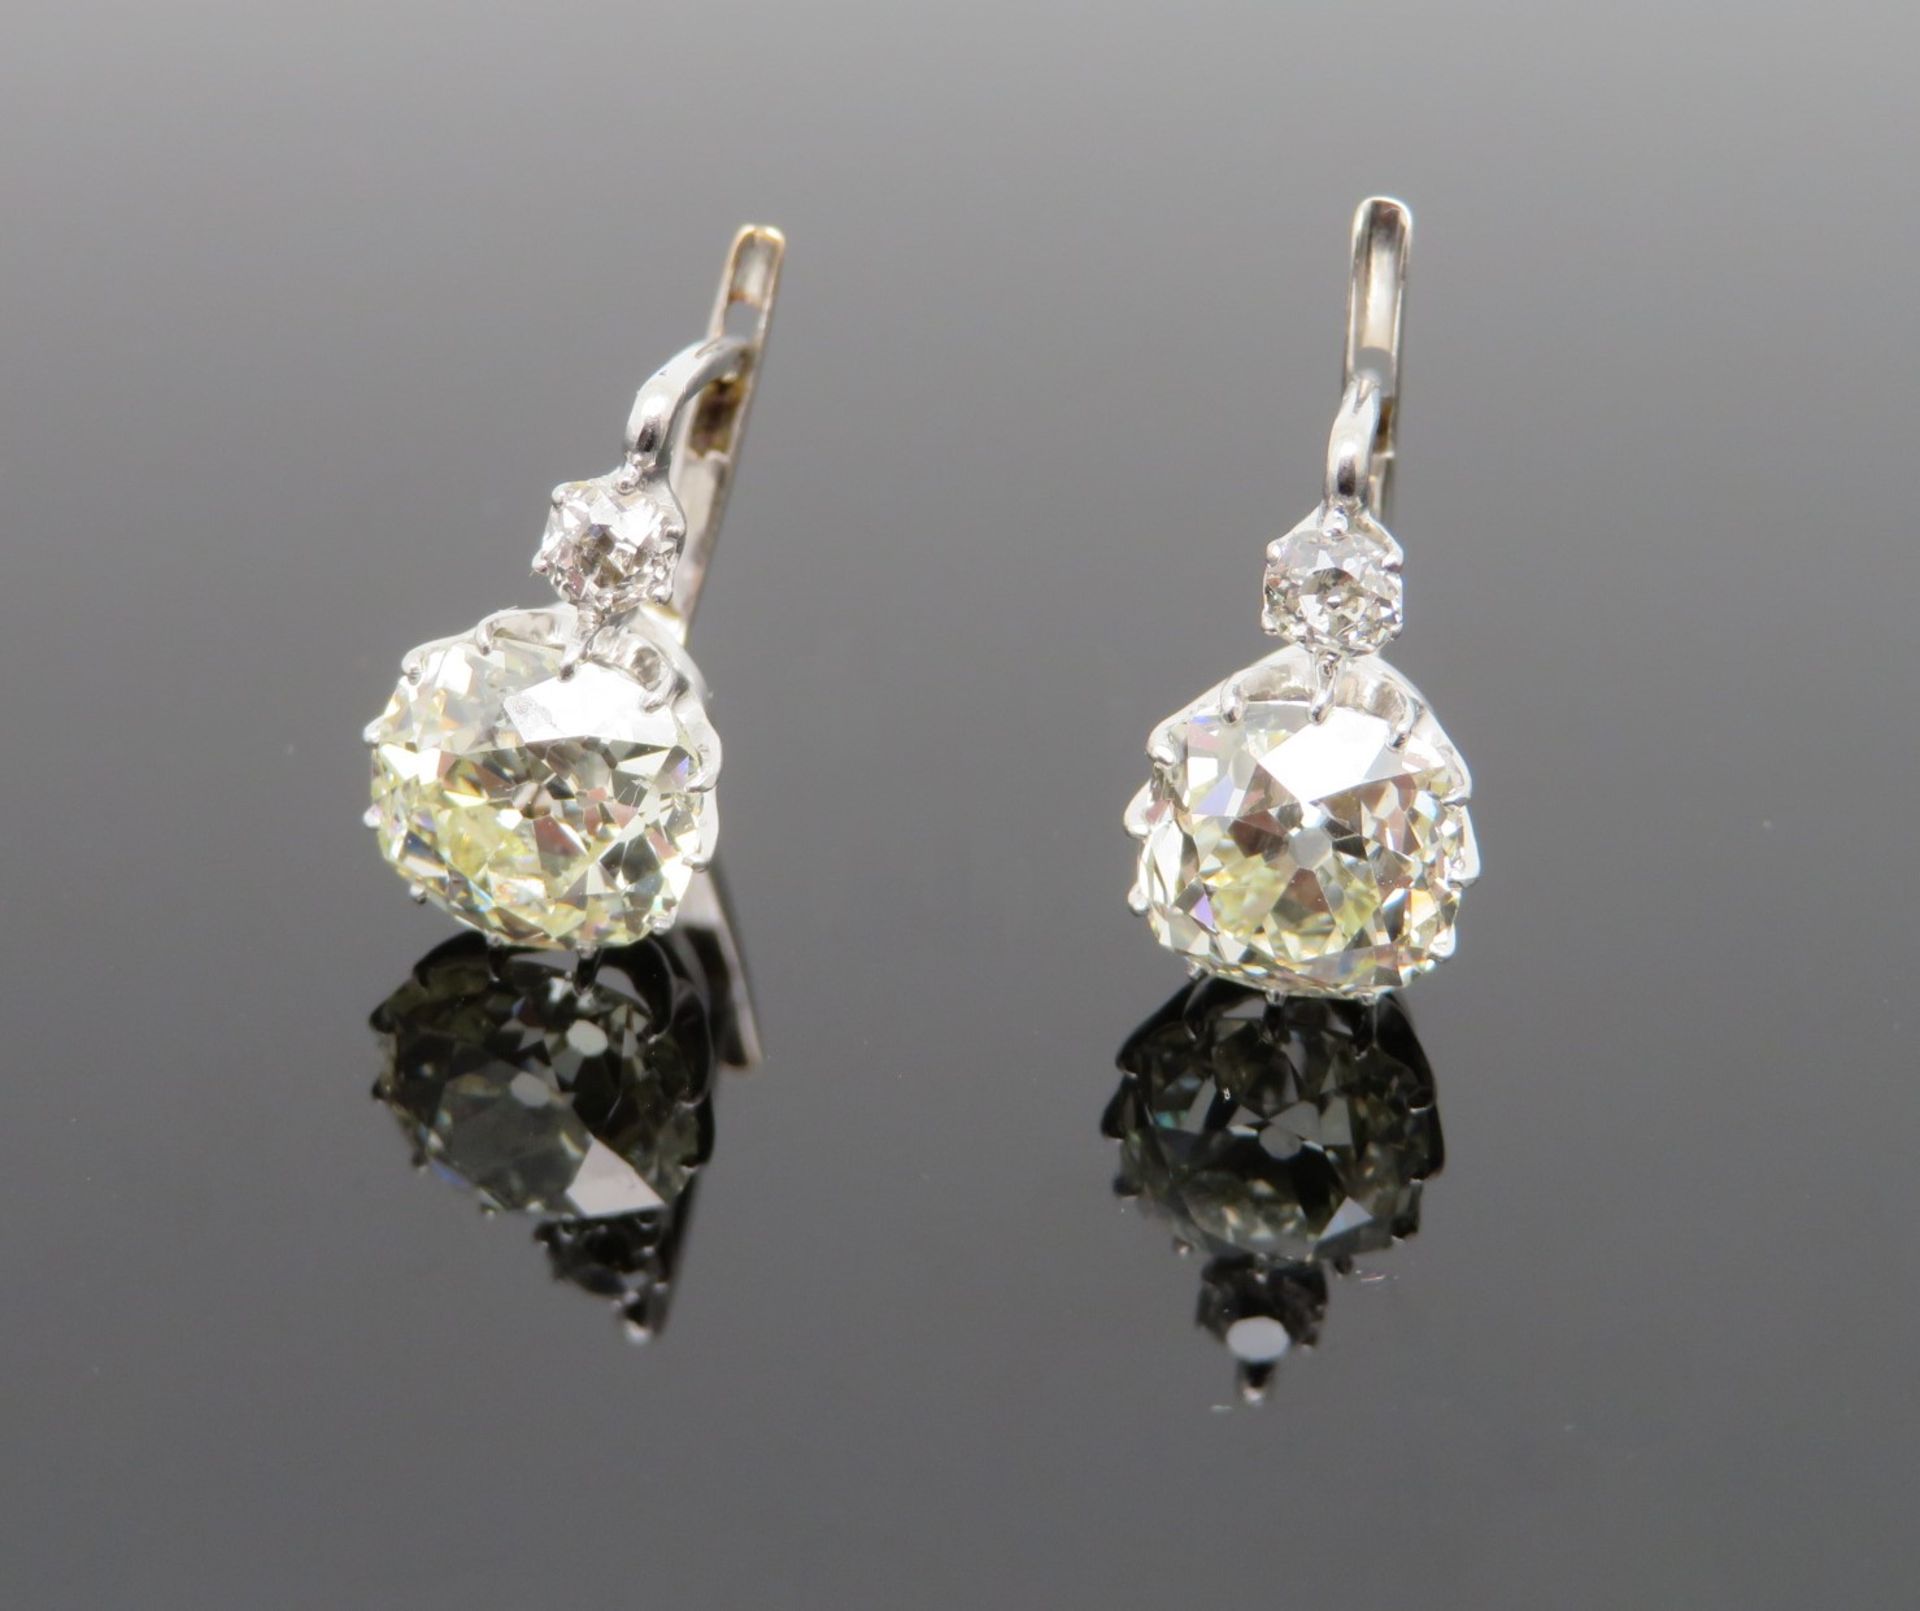 2 hochkarätige Ohrhänger, 4 Altschliffdiamanten, zus.ca. 3 ct, Weißgold 585/000, geprüft, l 1,7 cm, - Image 2 of 3